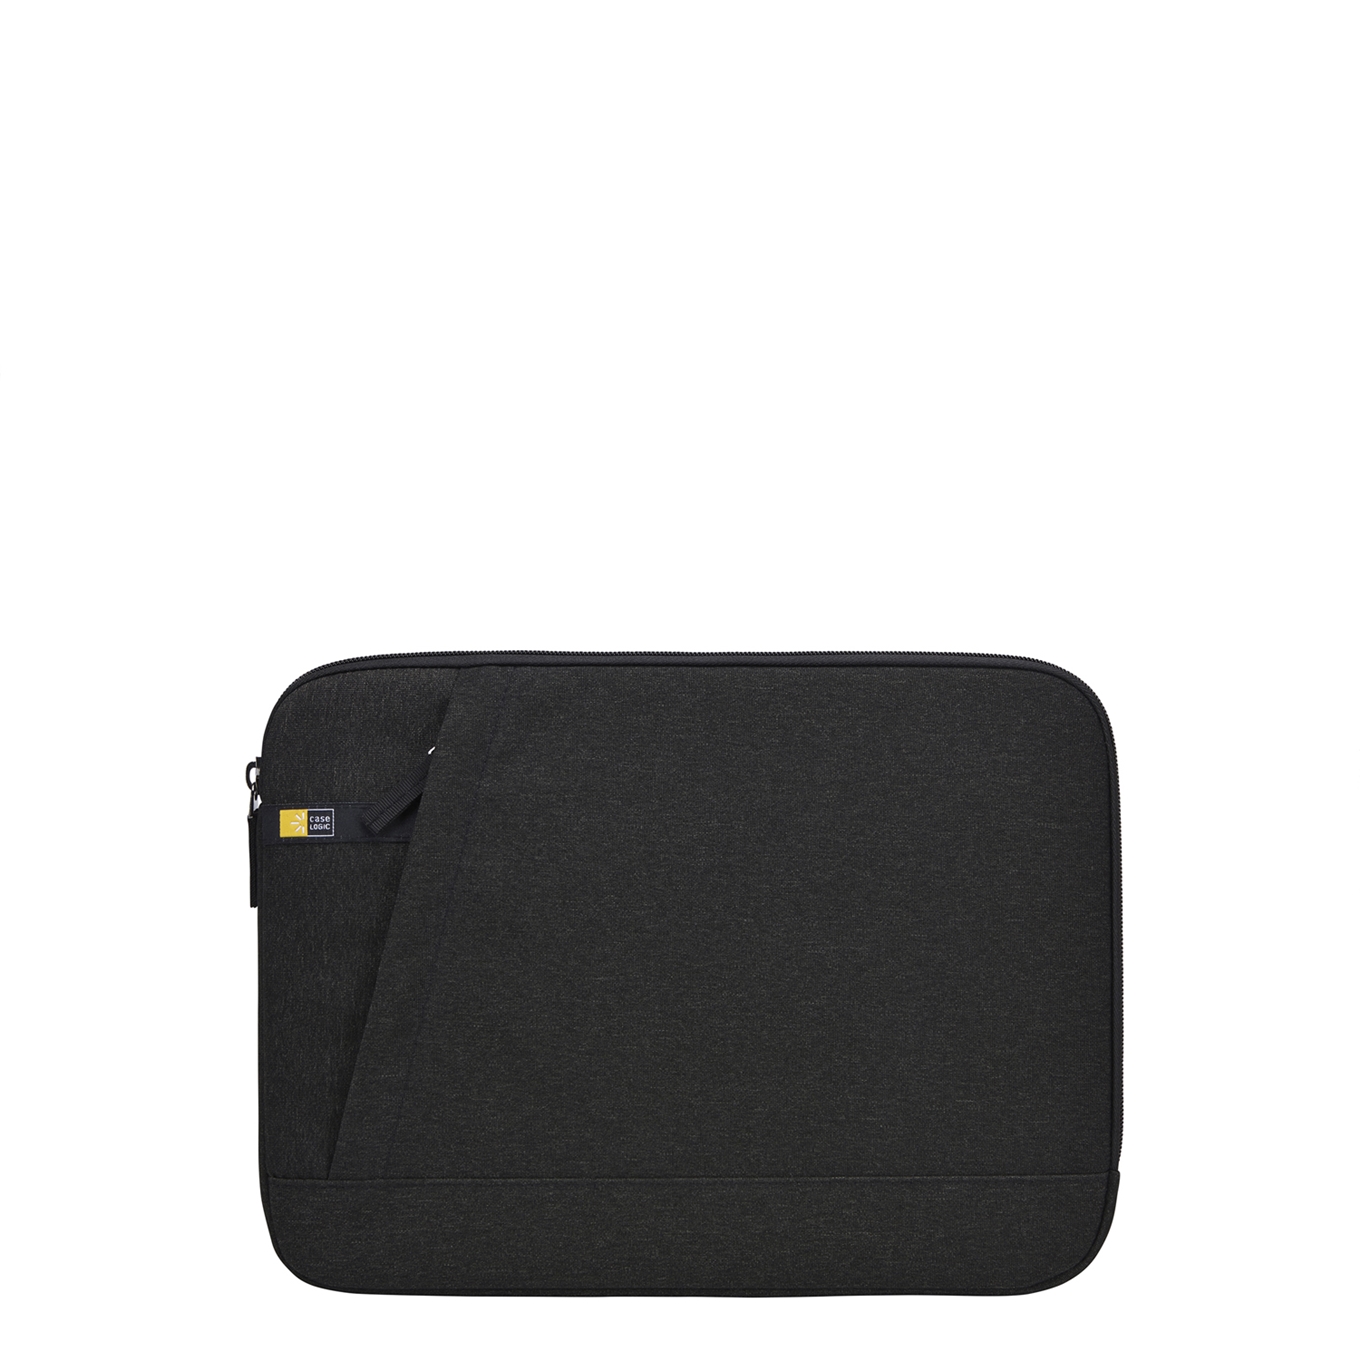 Case Logic Huxton Sleeve 13 inch black Laptopsleeve